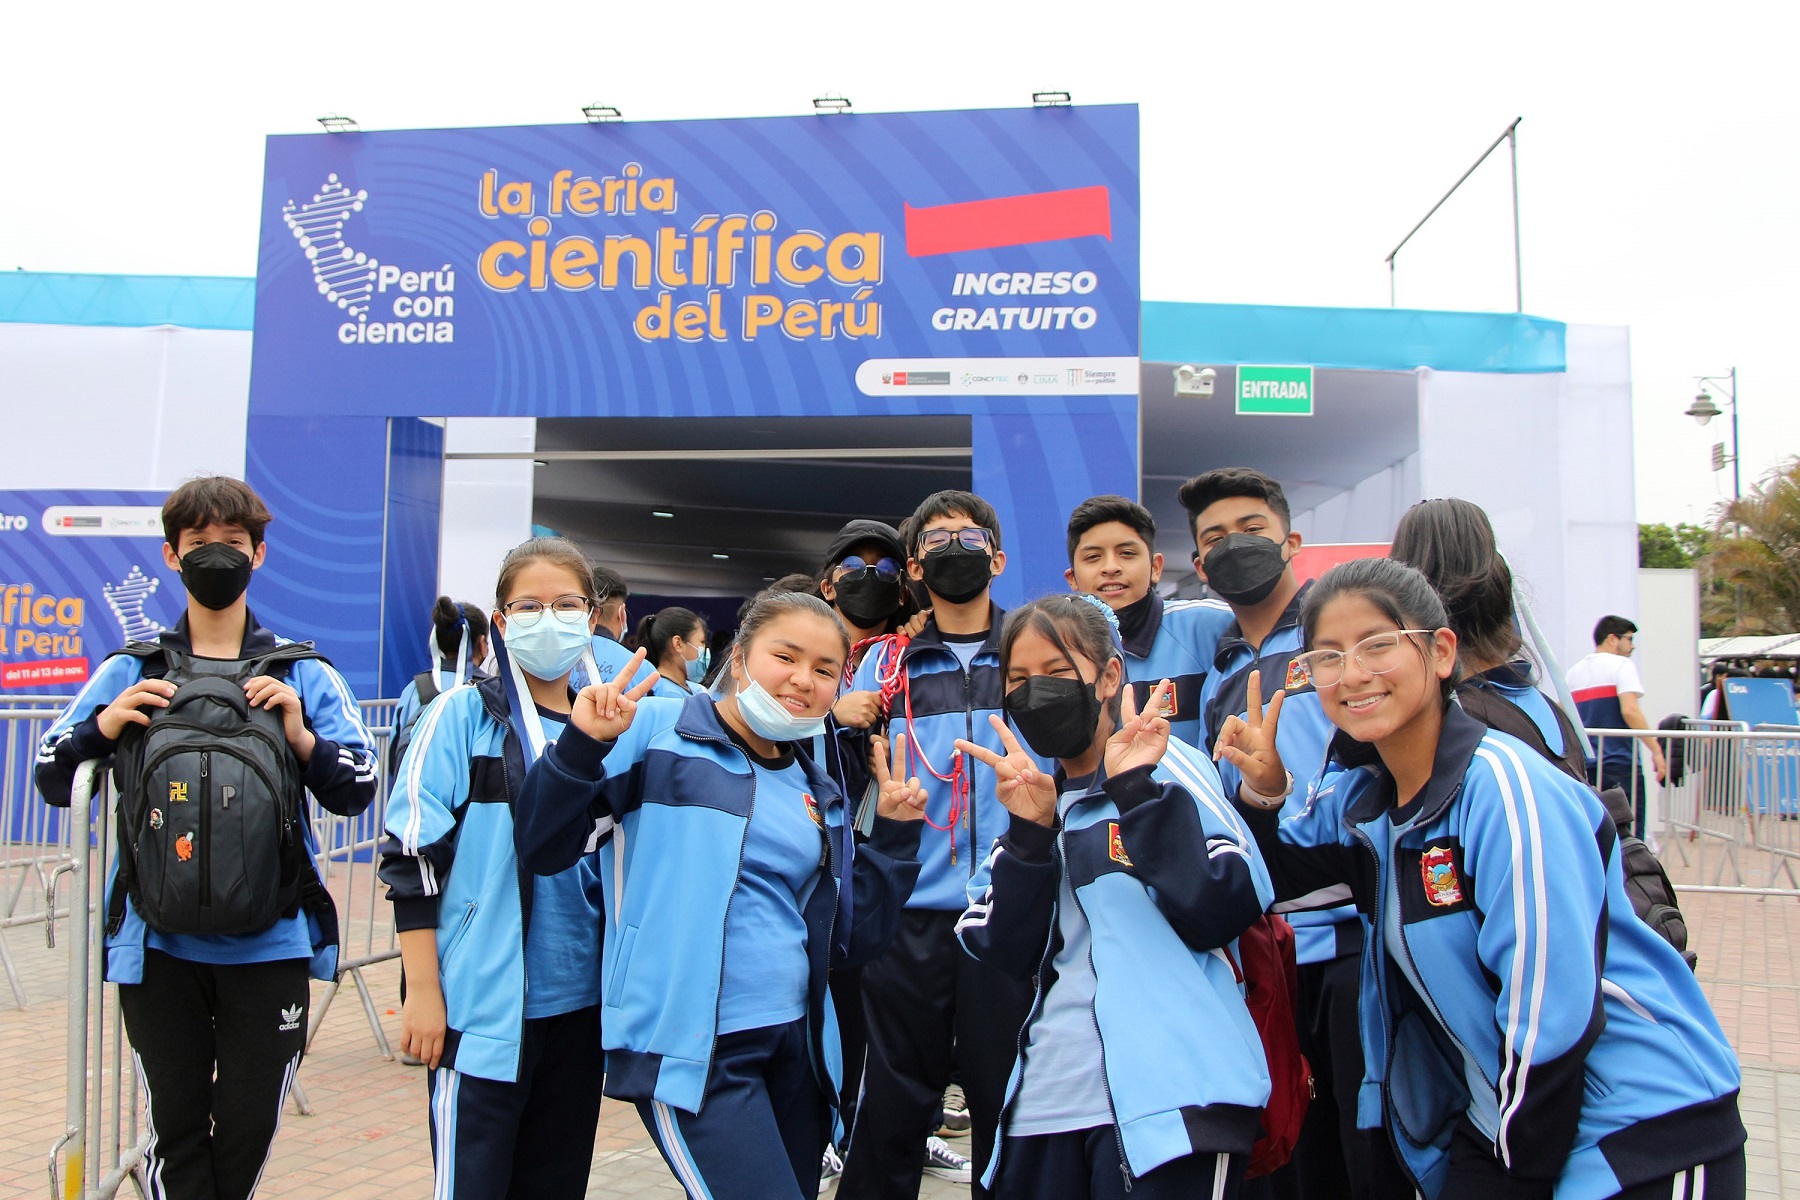 La feria “Perú con Ciencia” llega a Arequipa del 14 al 16 de diciembre y cerca de 100 expositores presentarán adelantos en ciencia y tecnología.